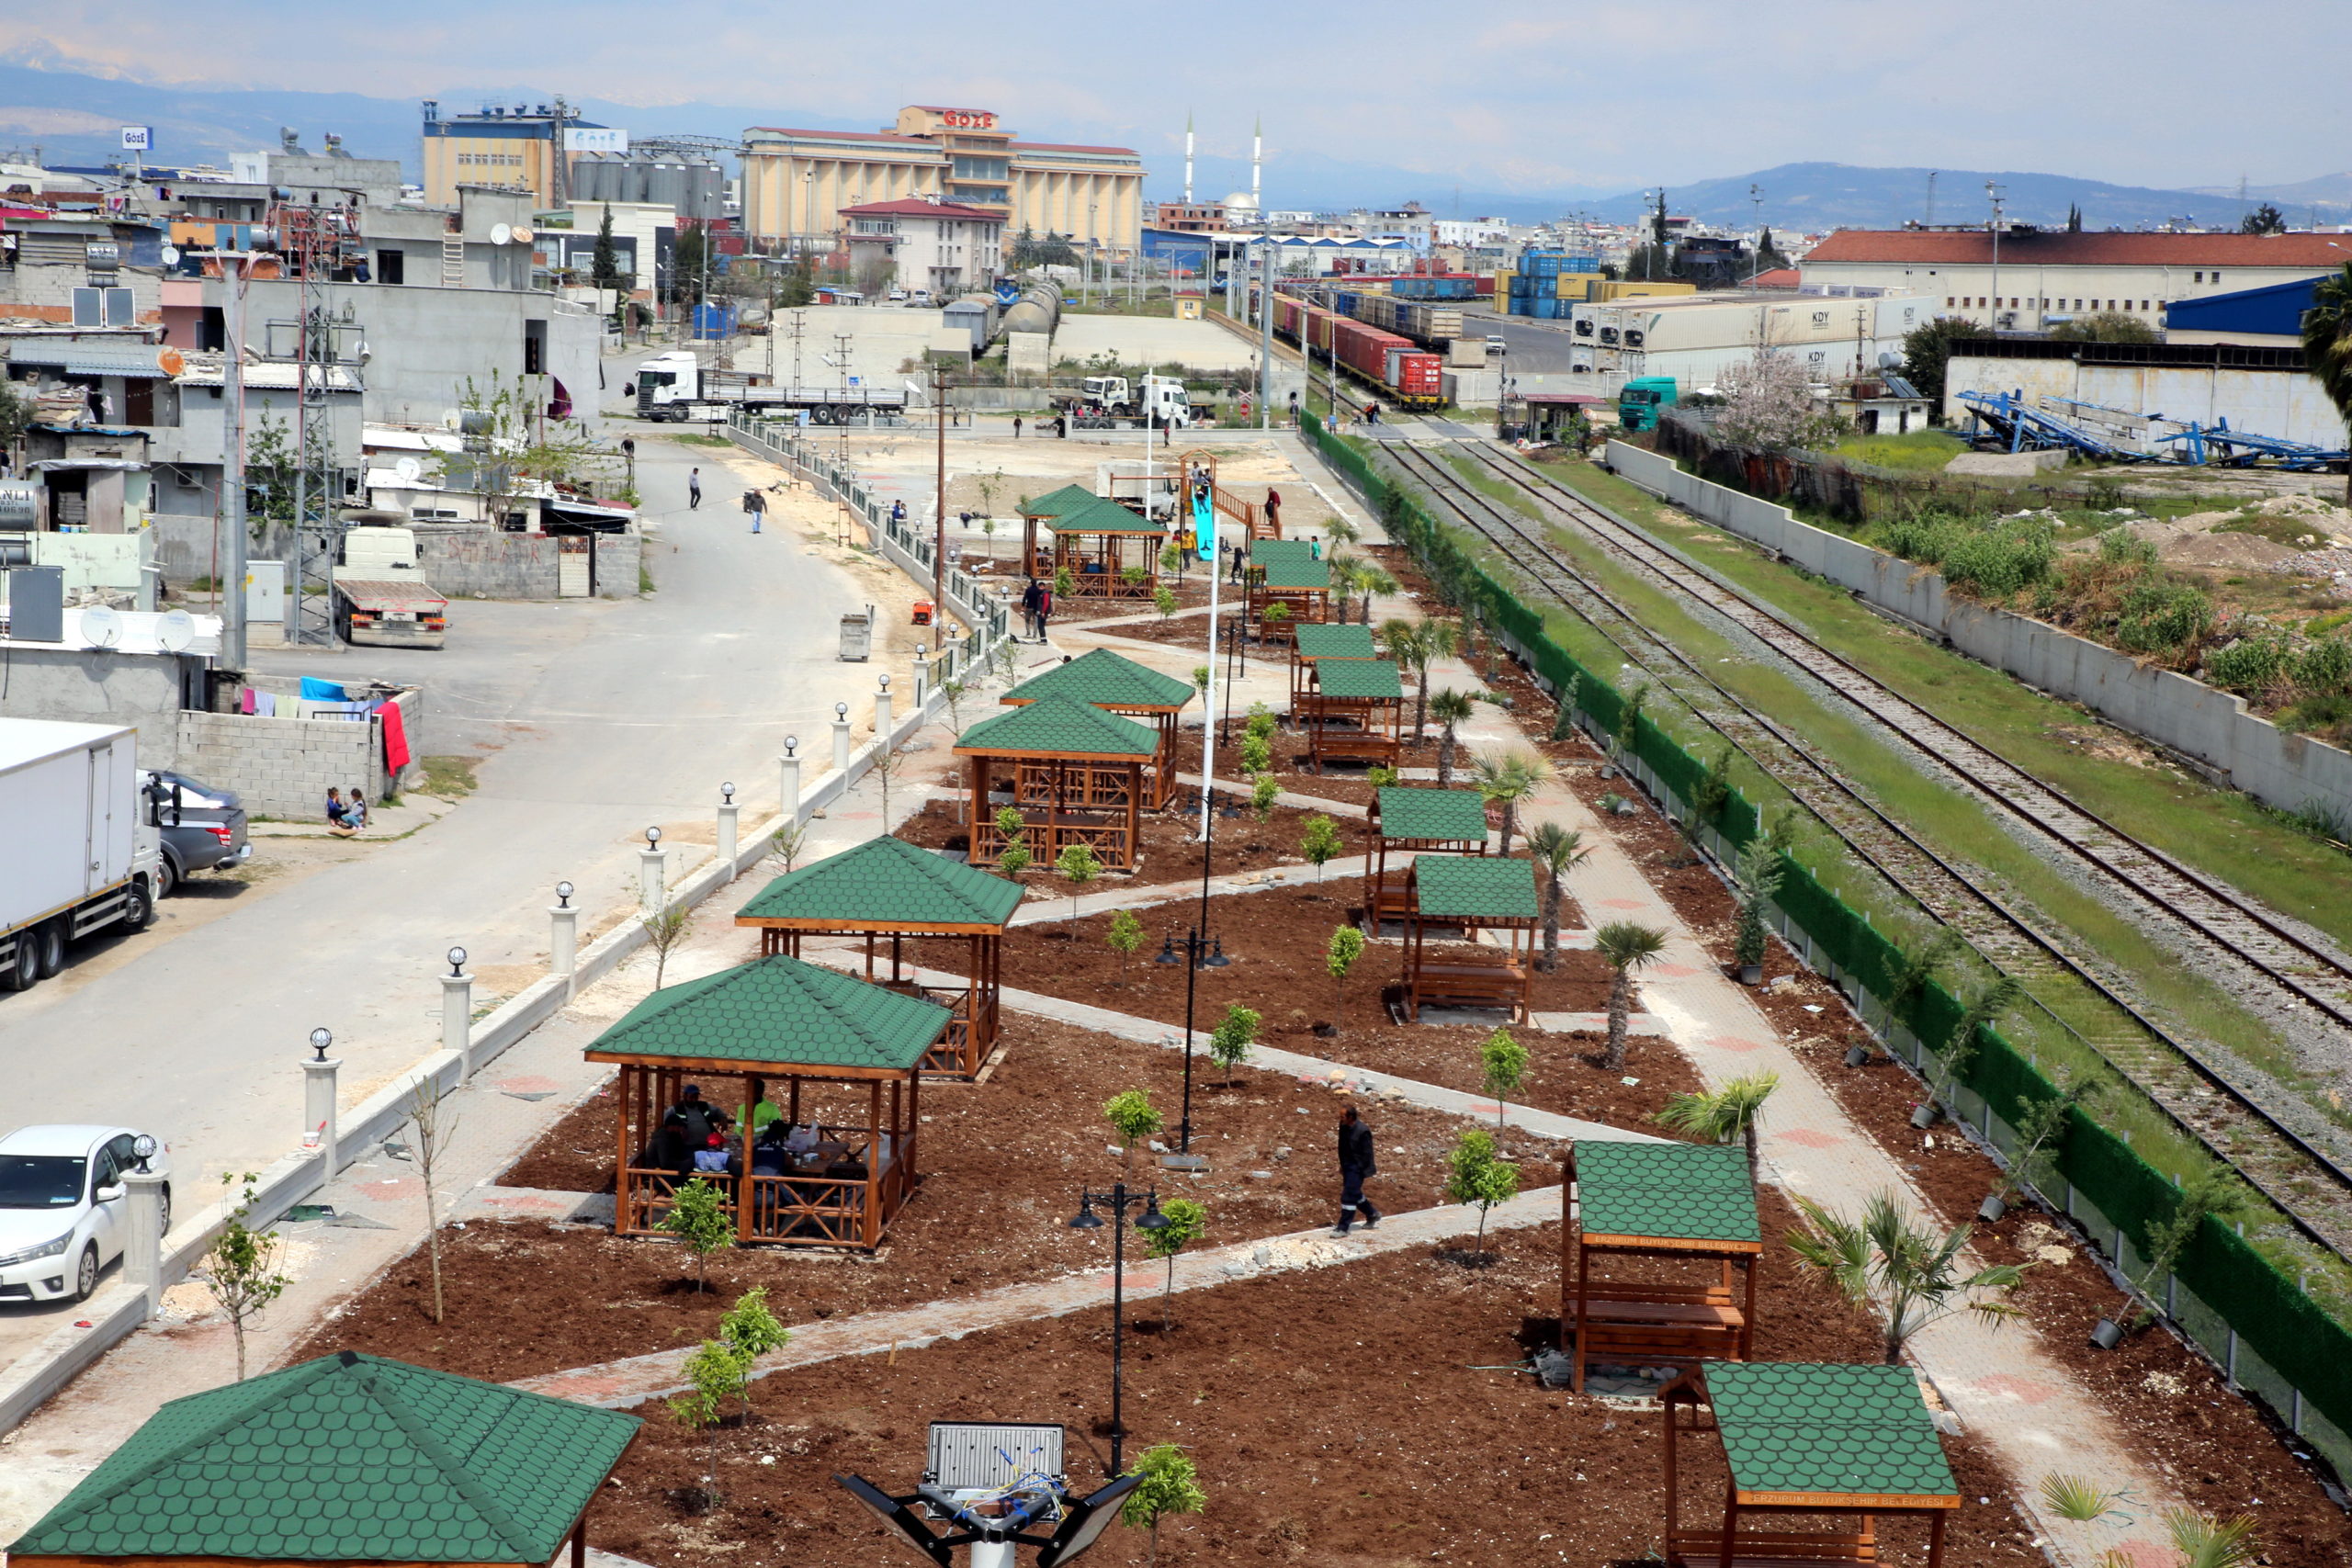  Akdeniz Özgürlük Mahallesi’nde Yeni Bir Yeşil Alan Oluşturuluyor